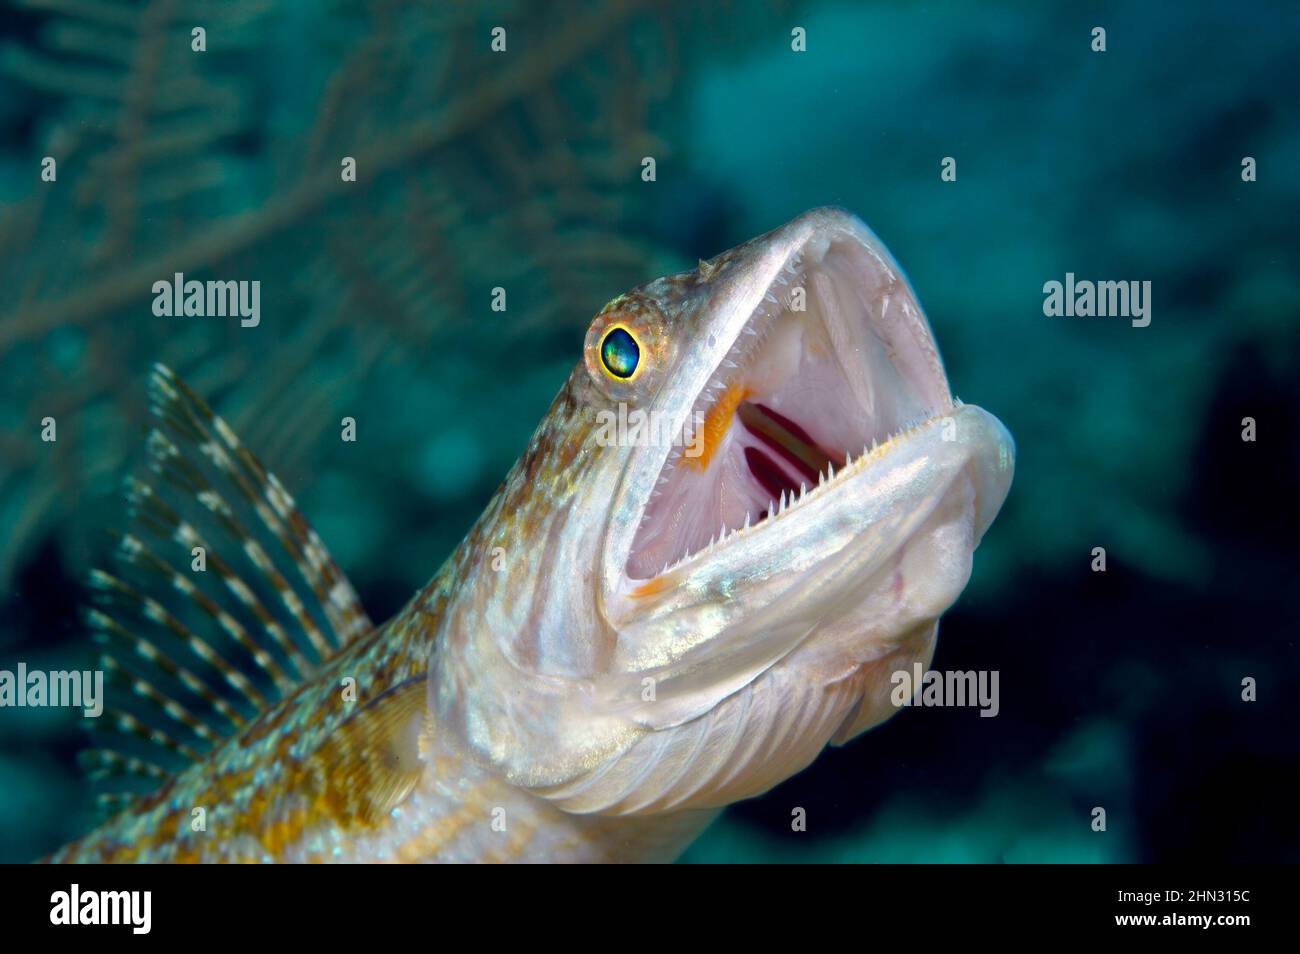 Un pez lagarto de caza en una playa tropical en Honduras espera pacientemente hasta que un pez más pequeño swms cerca y es emboscado y comido. Foto de stock